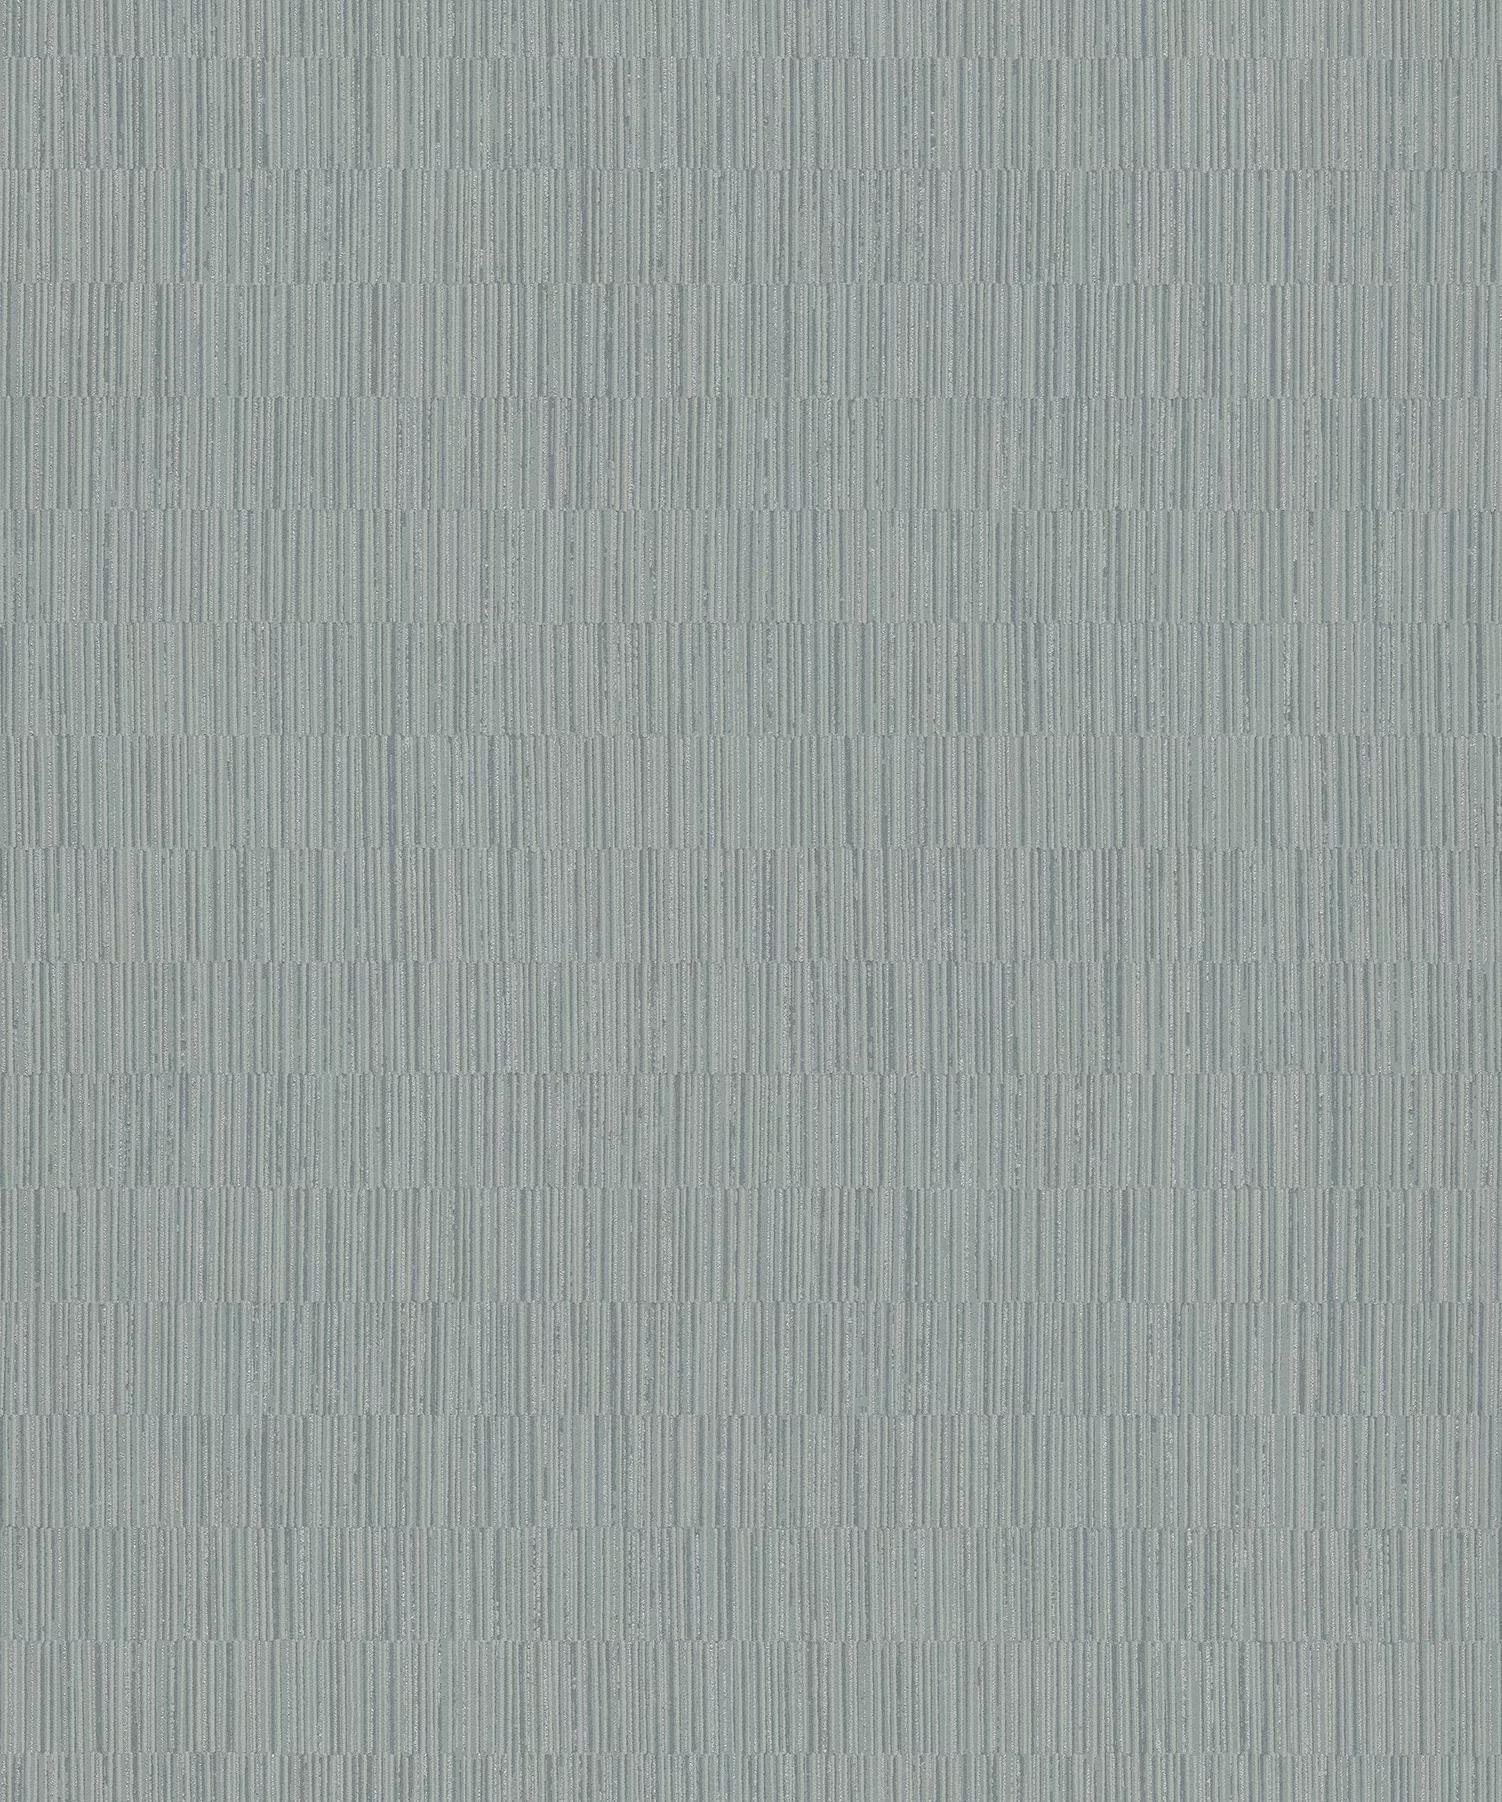 Csillogó felületű modern tapéta csíkos mintával